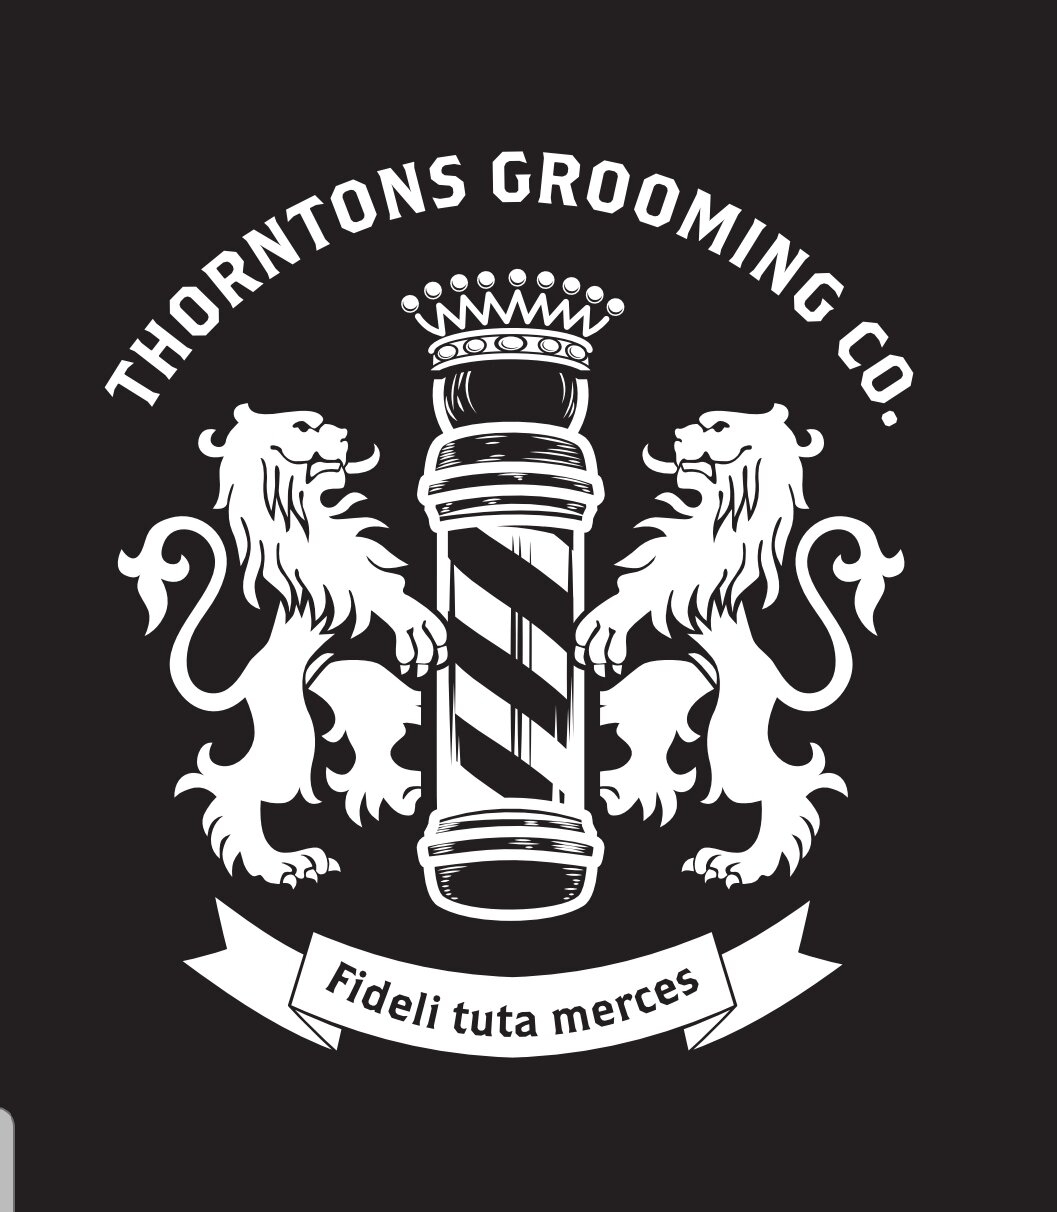 thorntons grooming co.jpg